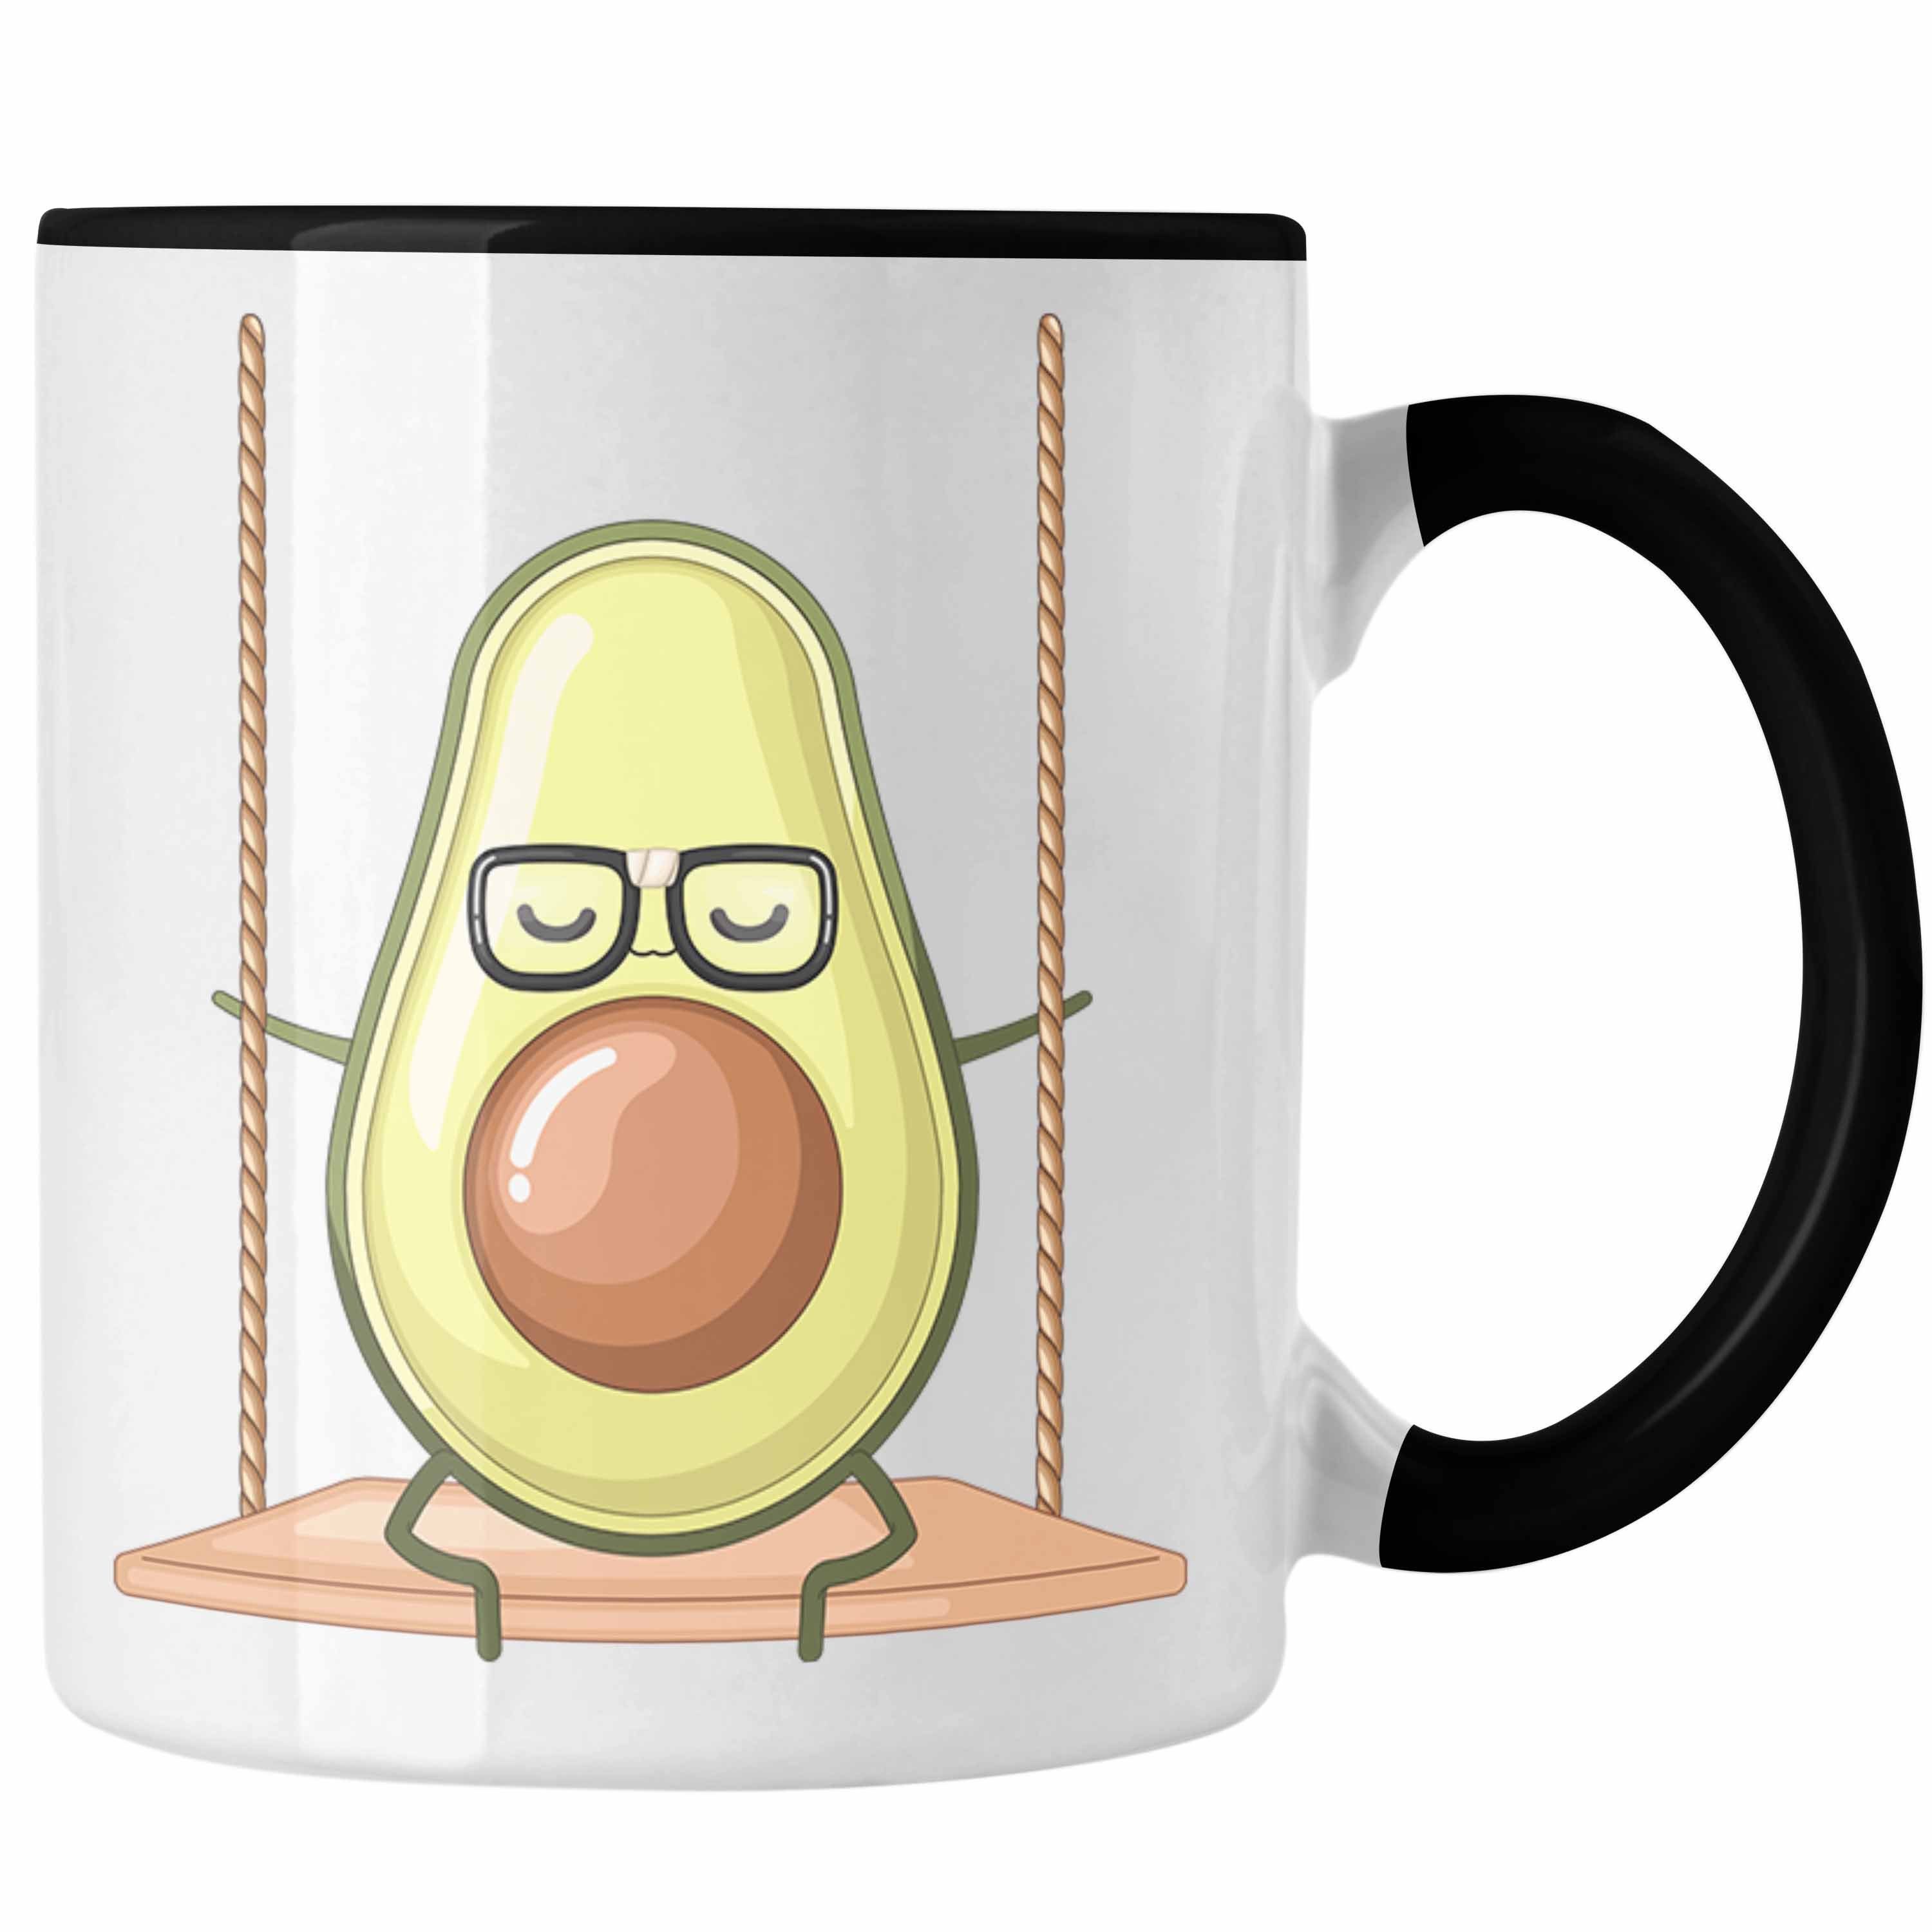 Trendation Tasse Lustige Tasse mit Avocado-Motiv - Originelle Geschenkidee für Avocado- Schwarz